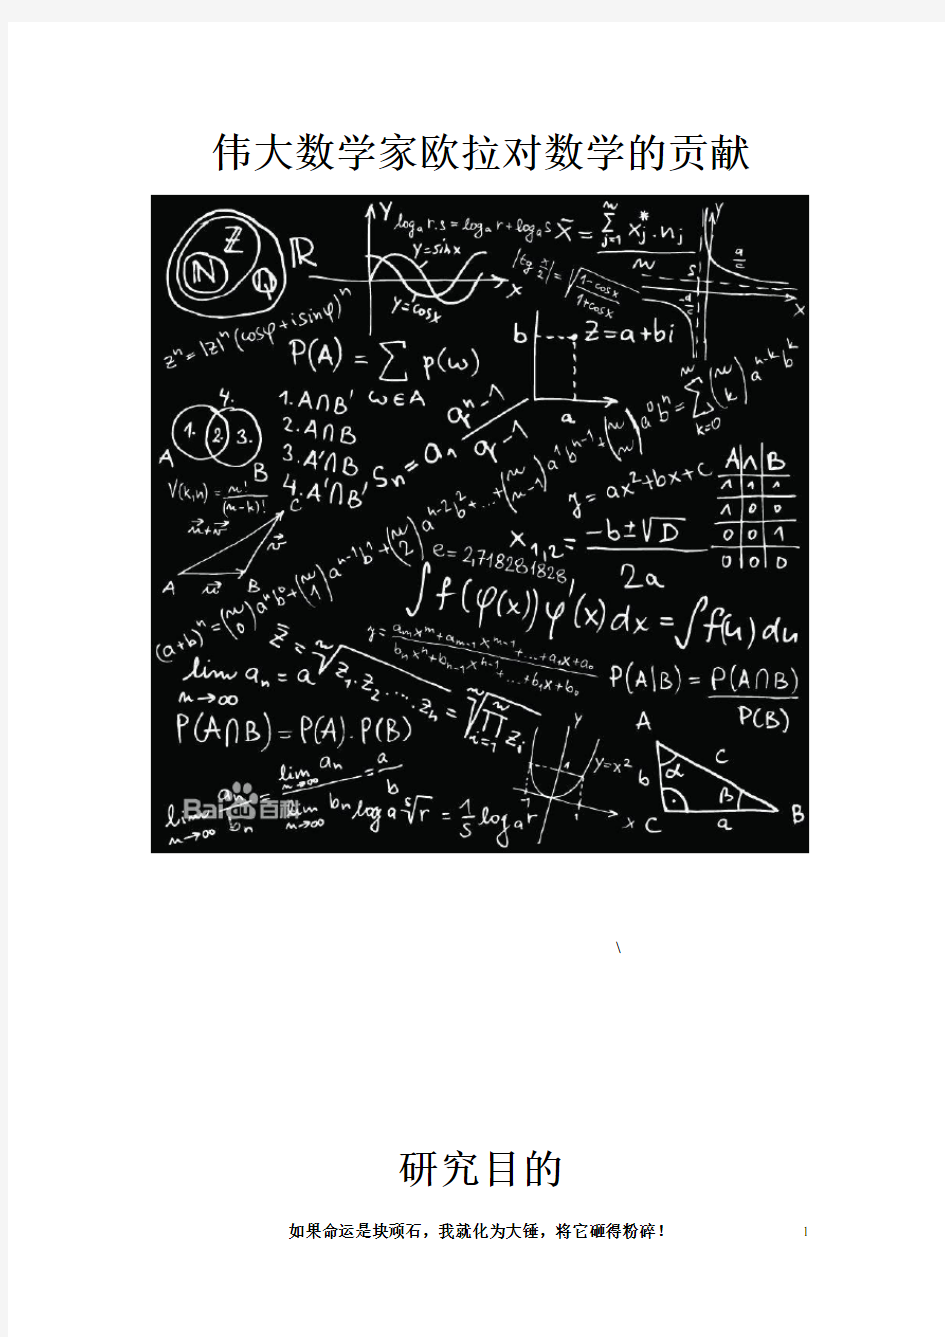 伟大数学家欧拉对数学的贡献 - 副本